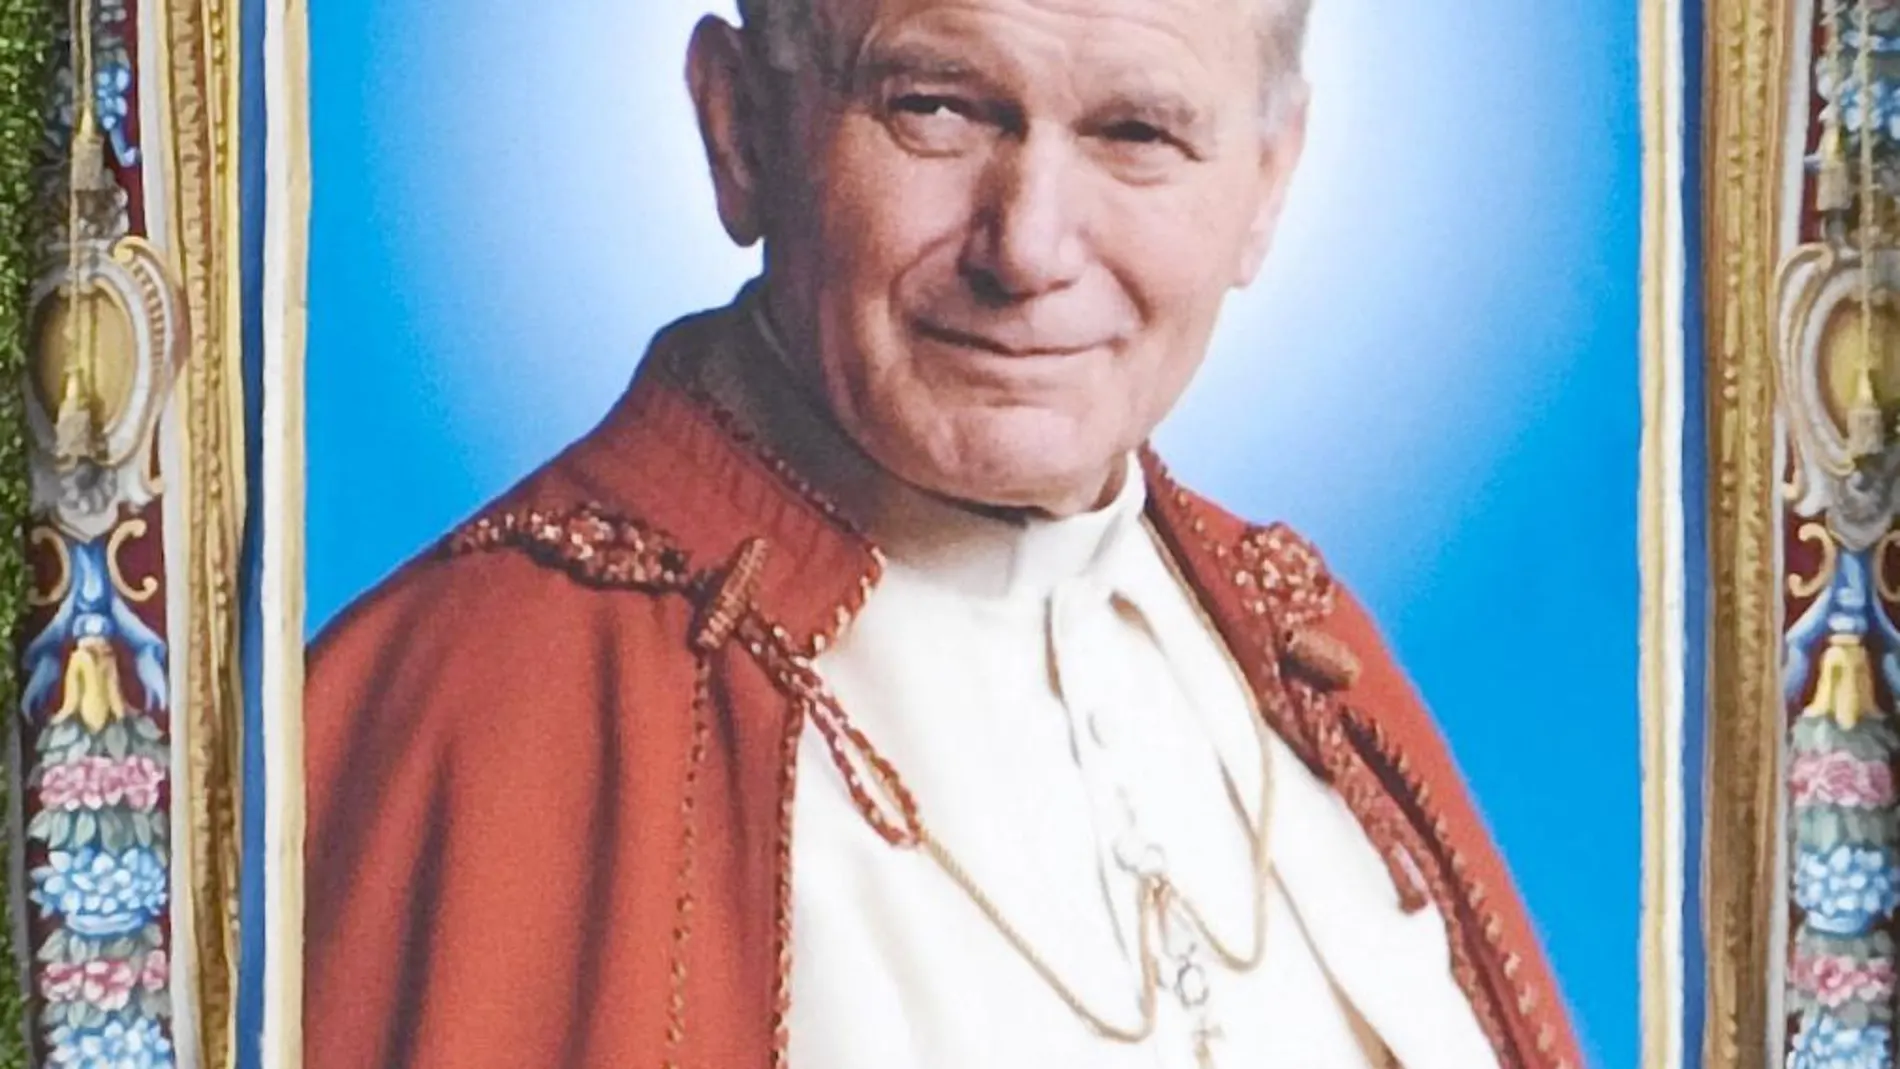 El tapiz de Juan Pablo II, al ser descubierto en San Pedro durante su beatificación